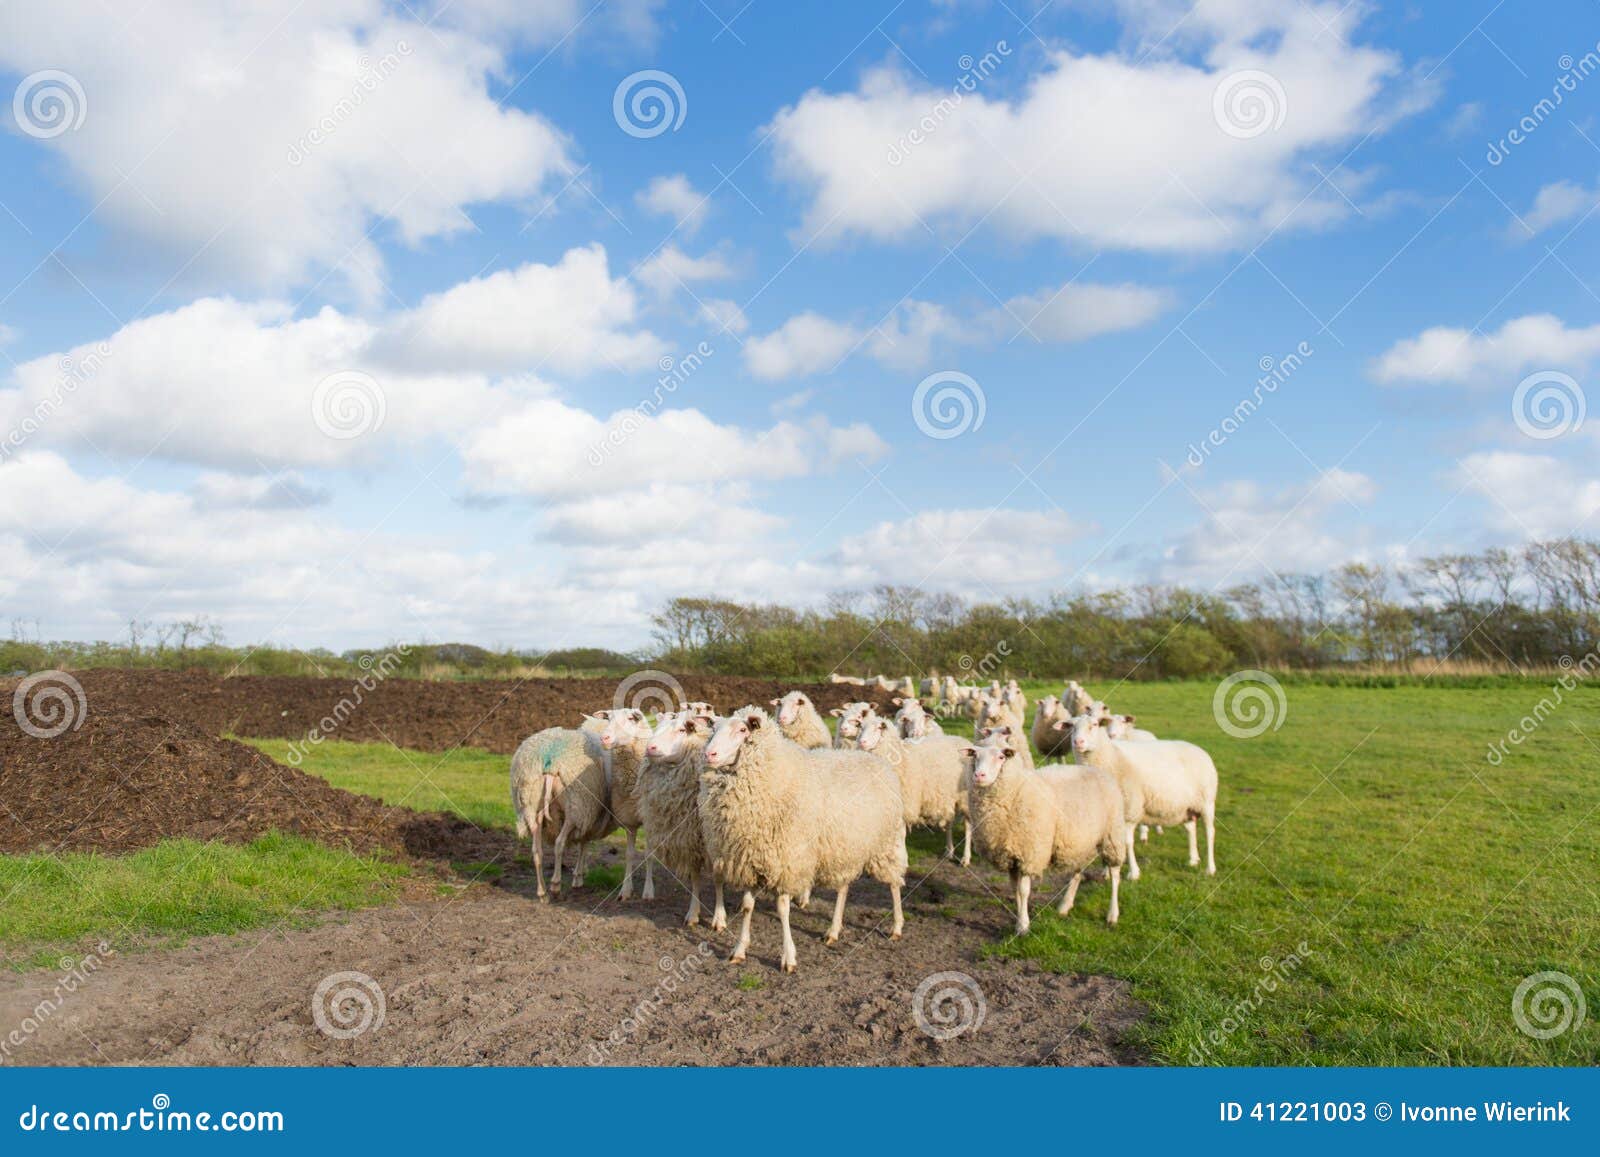 sheep at dutch wadden island terschelling